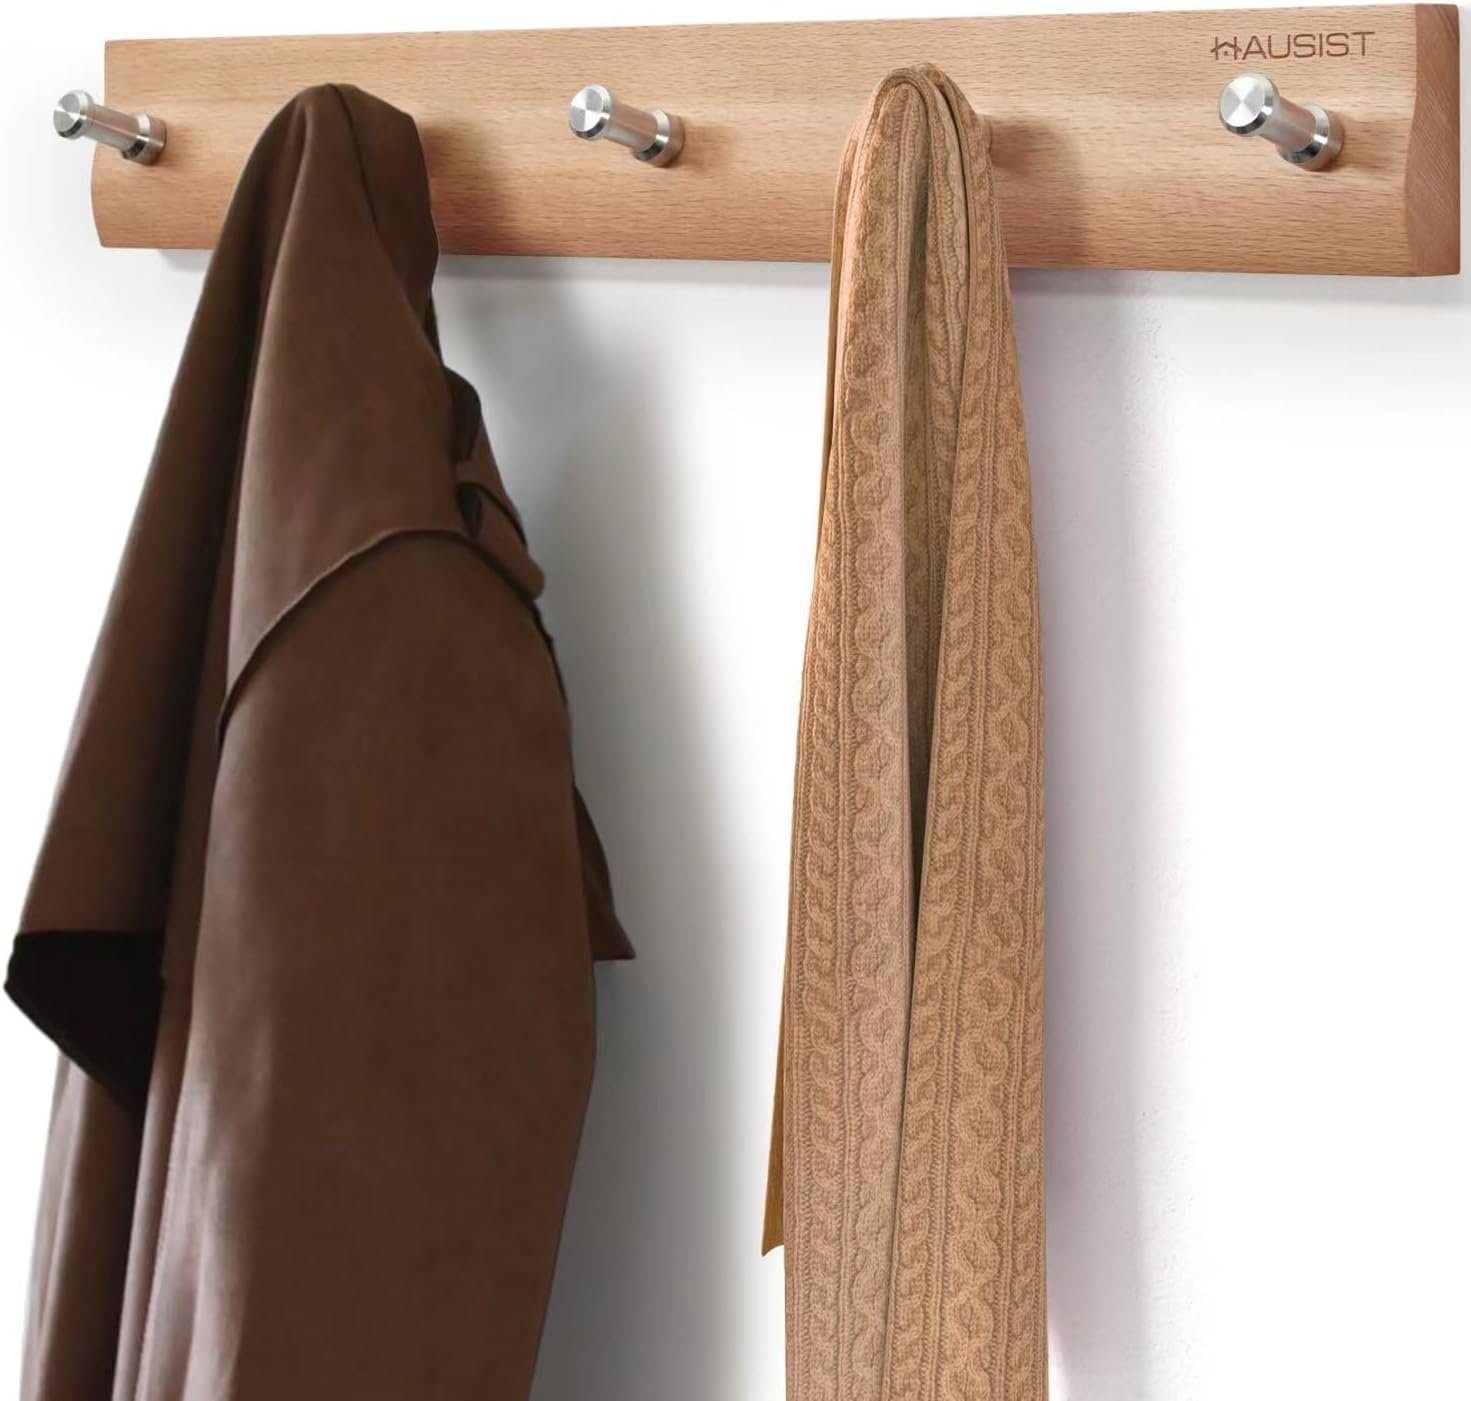 HAUSIST Garderobenhaken Garderobe mit 5 Wandgarderoben aus Wandgarderobe Hakenleiste, Flure, Kleiderhaken, für Edelstahlhaken, Bucheholz Holz